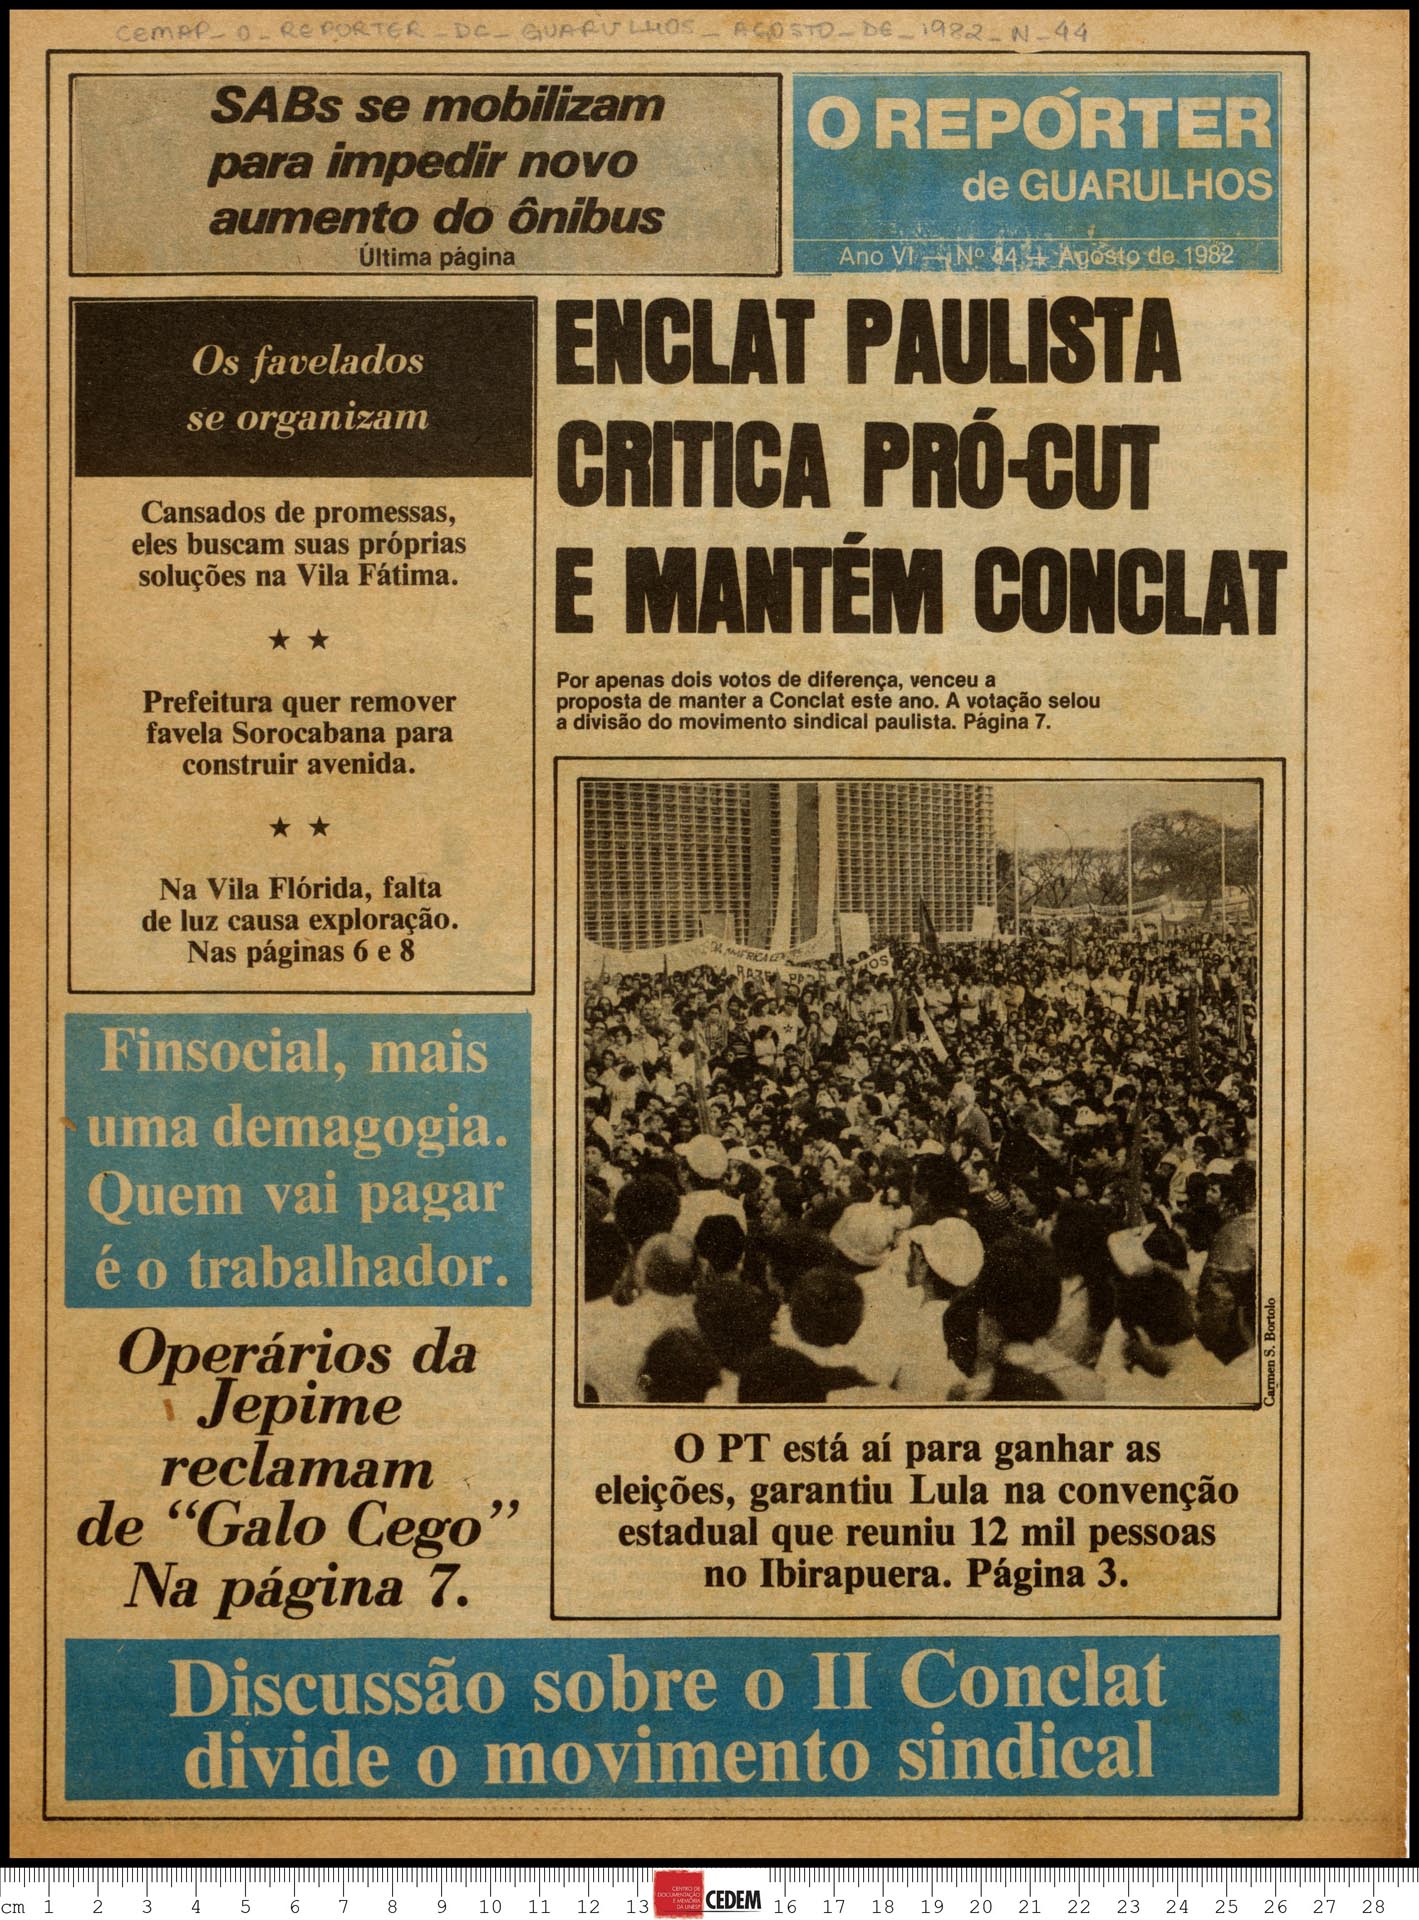 O reportér de Guarulhos - 44 - ago. 1982